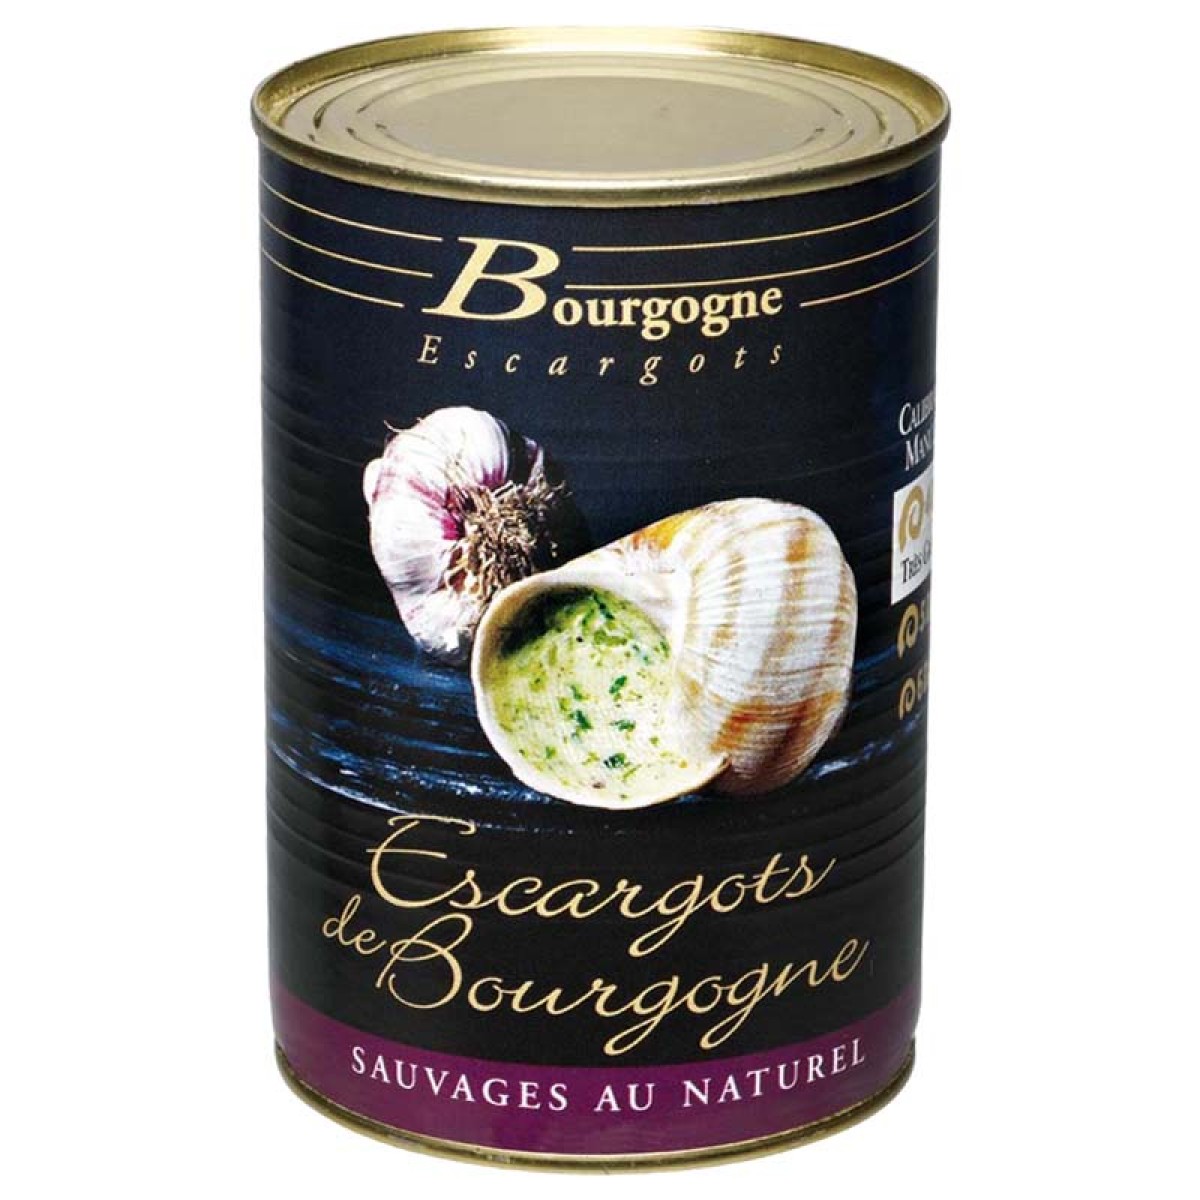 Escargots de Bourgogne 10 douzaines Belle grosseur - Conserve